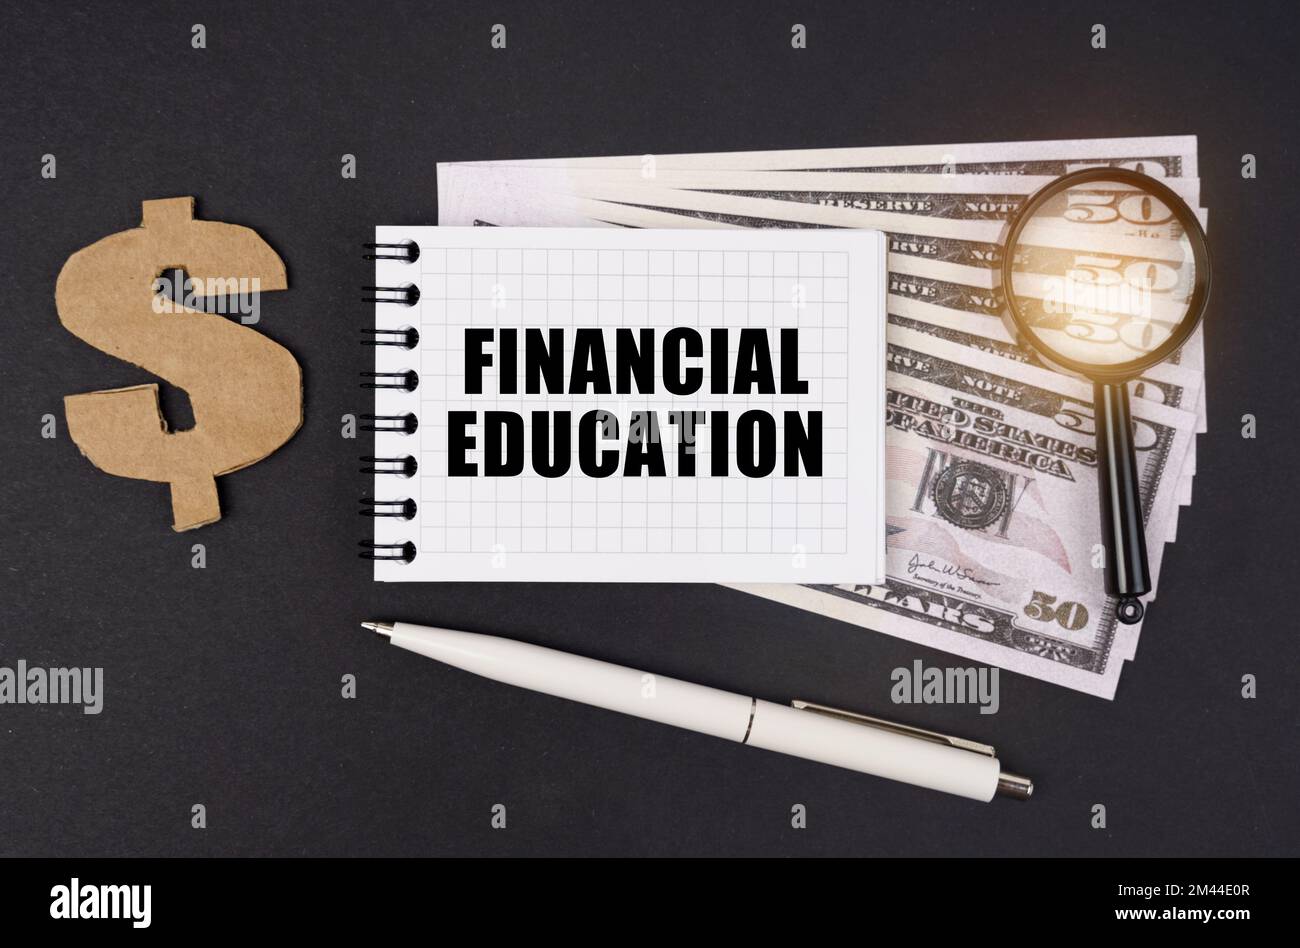 Geschäfts- und Finanzkonzept. Auf einer schwarzen Oberfläche liegen Dollar, ein Symbol, eine Lupe, ein Stift und ein Notizblock mit der Aufschrift "FINANCIAL EDUCA" Stockfoto